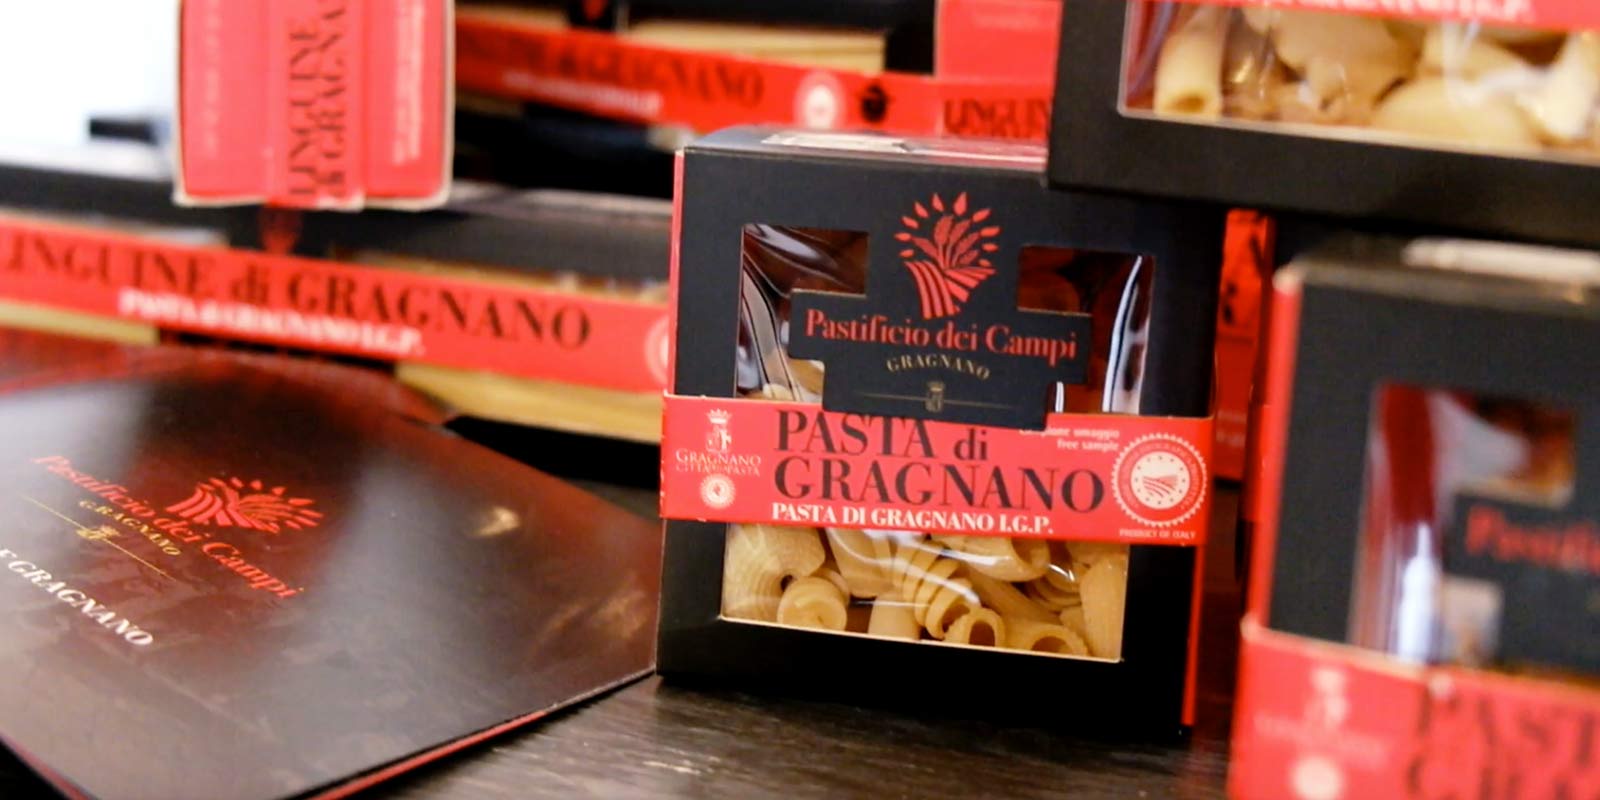 Pastifico dei Campi - Pasta di Gragnano IGP Pastificio dei Campi proizvodi neke talijanske klasike i neke originalne kreacije. Tjestenina je napravljena od 100% talijanske durum psenicne krupice i ekstrudirana u broncanim kalupima.